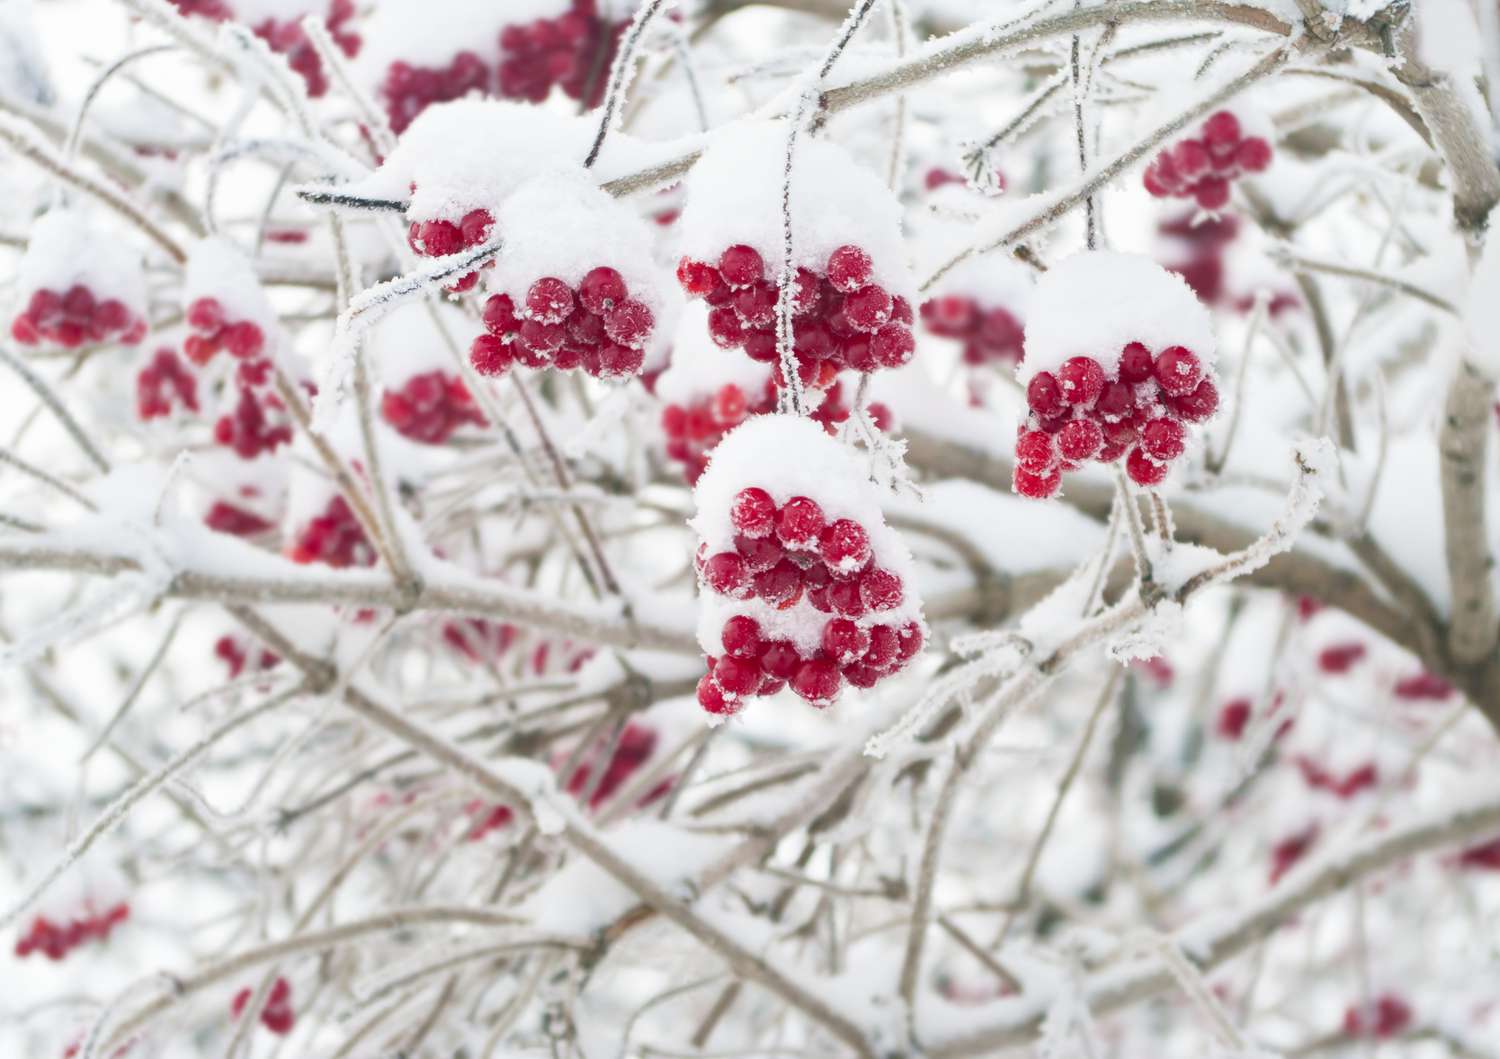 Schneebedeckte Preiselbeerstrauchzweige mit roten Beeren in Nahaufnahme